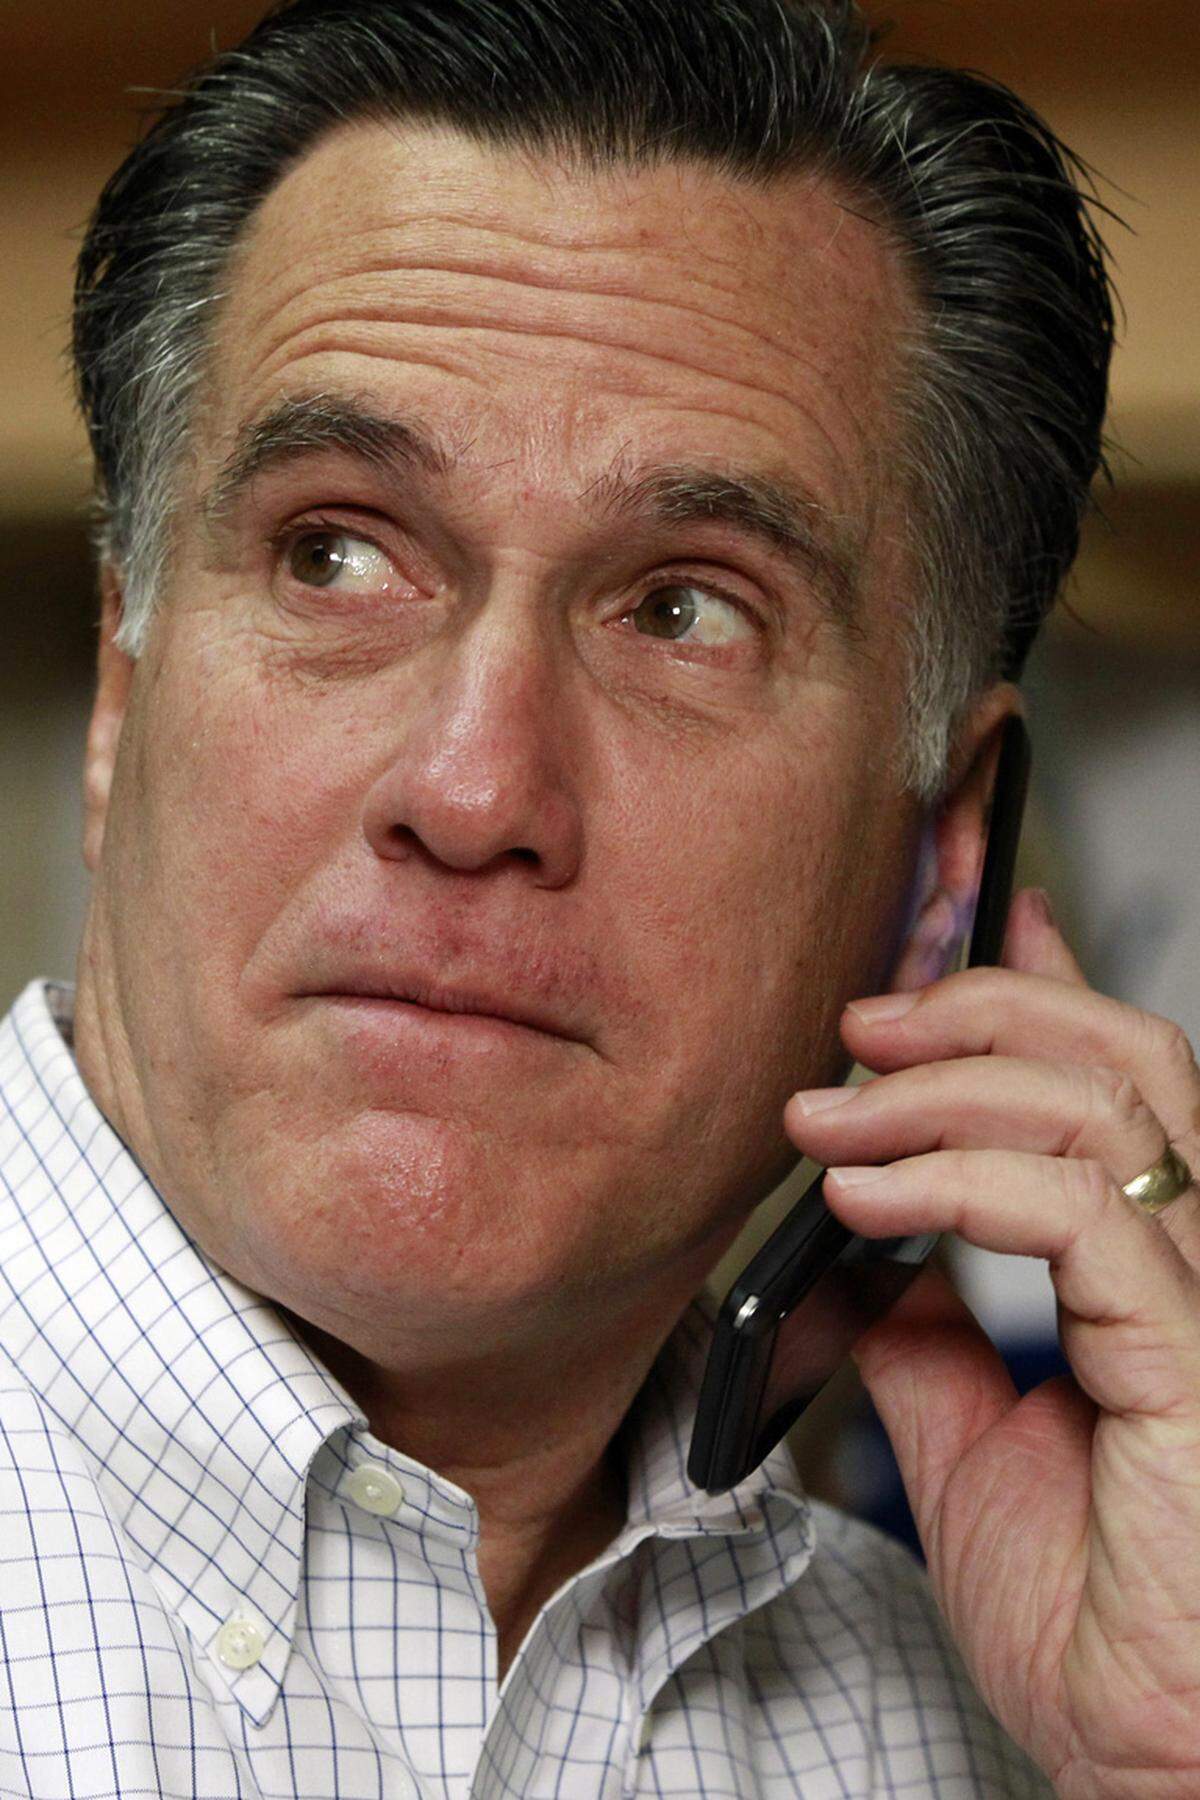 Romney macht zudem sein Ruf als politischer Wendehals zu schaffen: Als Gouverneur von Massachusetts trat er etwa für das Recht auf Abtreibung ein, inzwischen verteufelt er sie. Vom Fürsprecher für die Rechte Homosexueller wandelt er sich zum scharfen Gegner der Homo-Ehe. Und obwohl er in Massachusetts selbst ein ähnliches Gesundheitssystem installiert hat, zieht er gegen Obamas Gesundheitsreform von Leder. Im US-Vorwahlkampf nannte ihn Konkurrent Newt Gingrich dann auch ein "politisches Chamäleon".